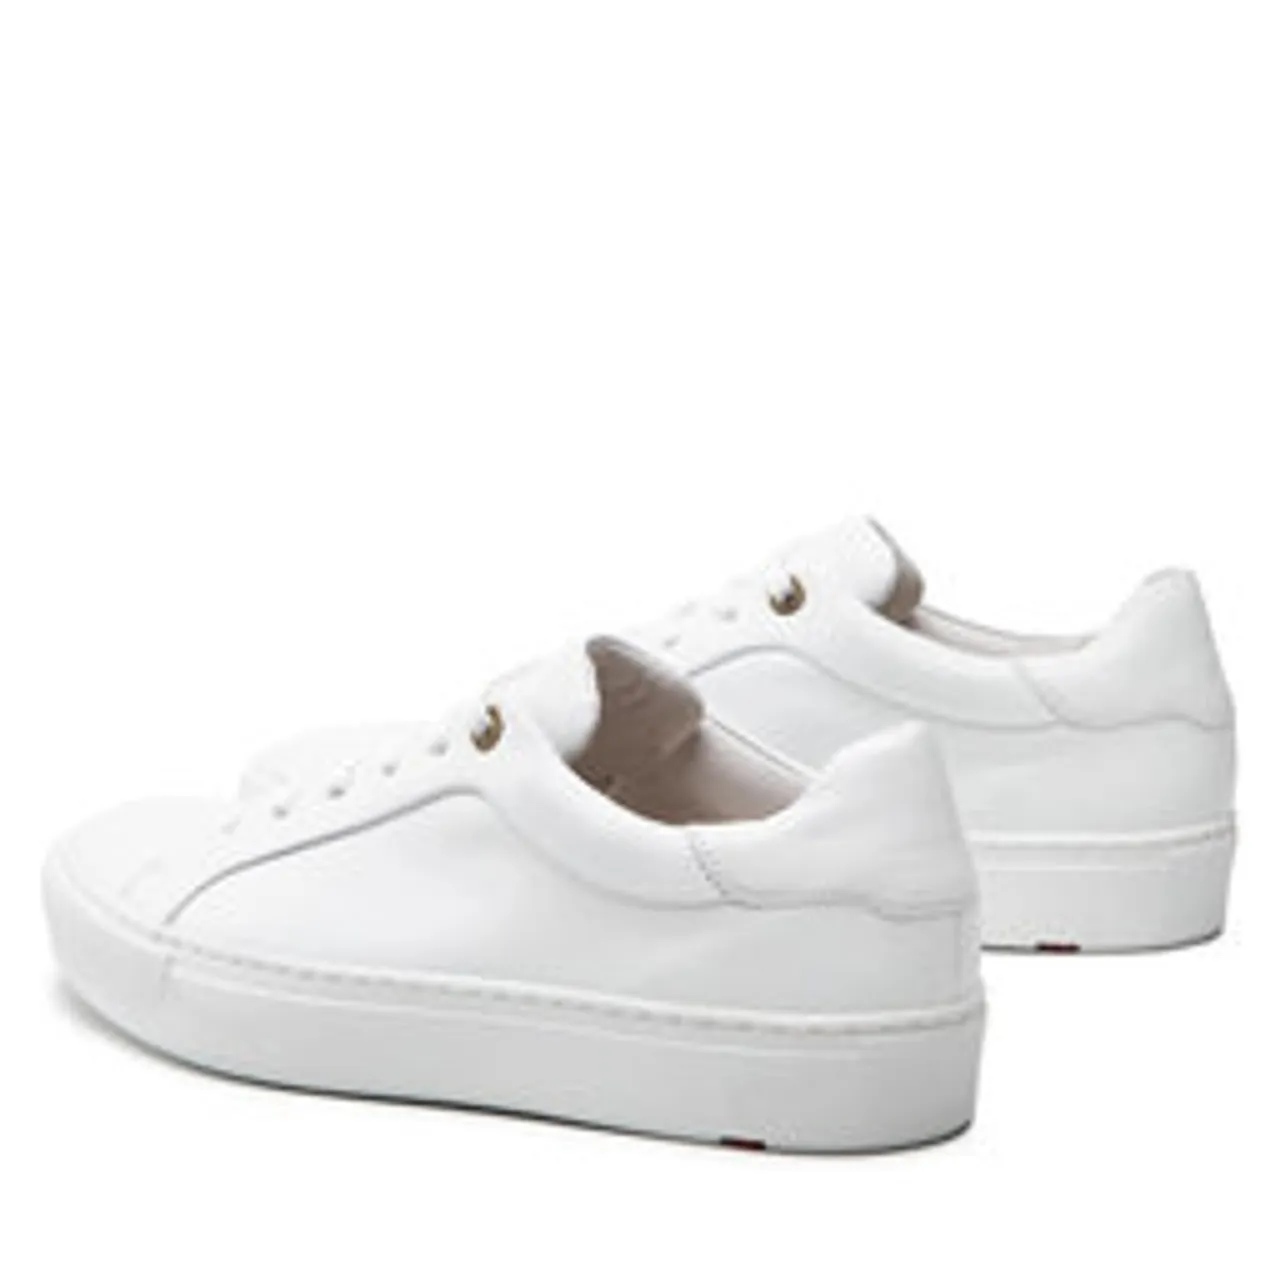 Sneakers Lloyd Ajan 29-518-05 White